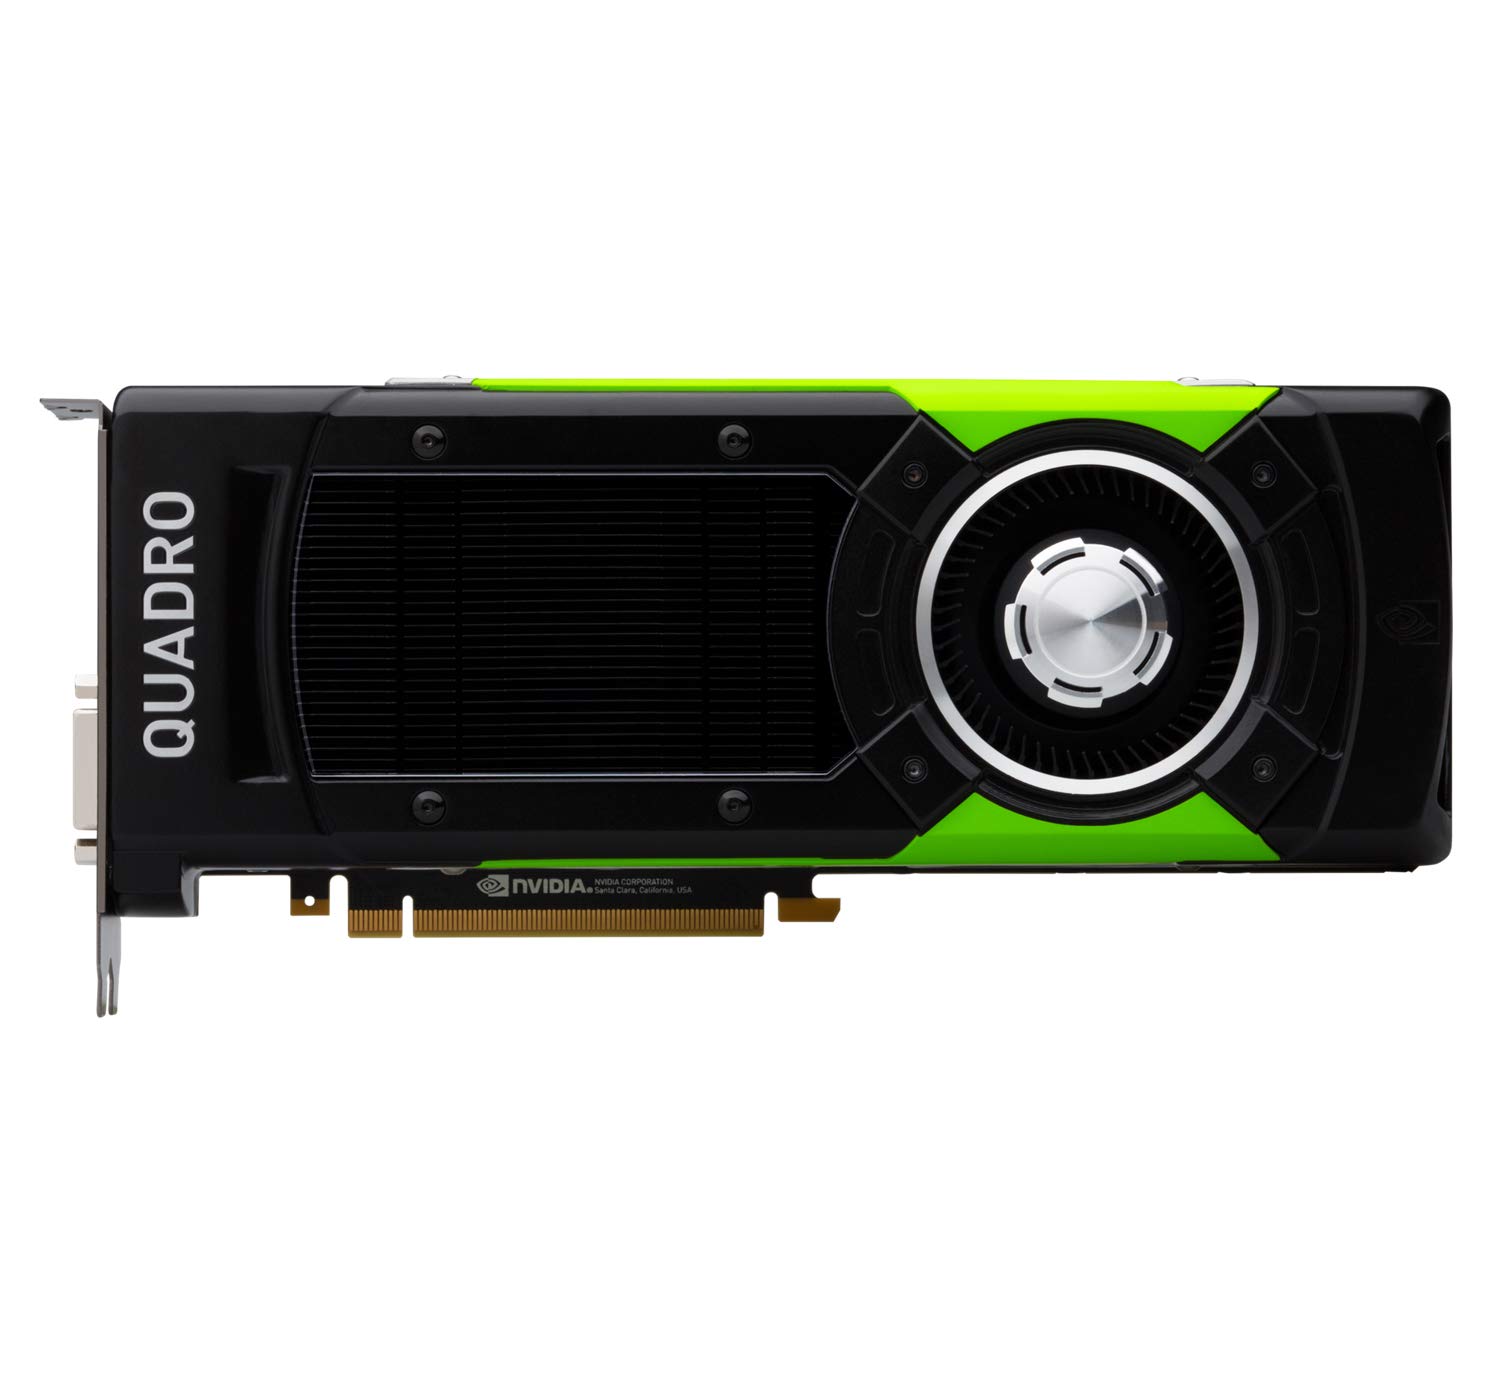 NVIDIA QUADRO P1000 GPU MODULE